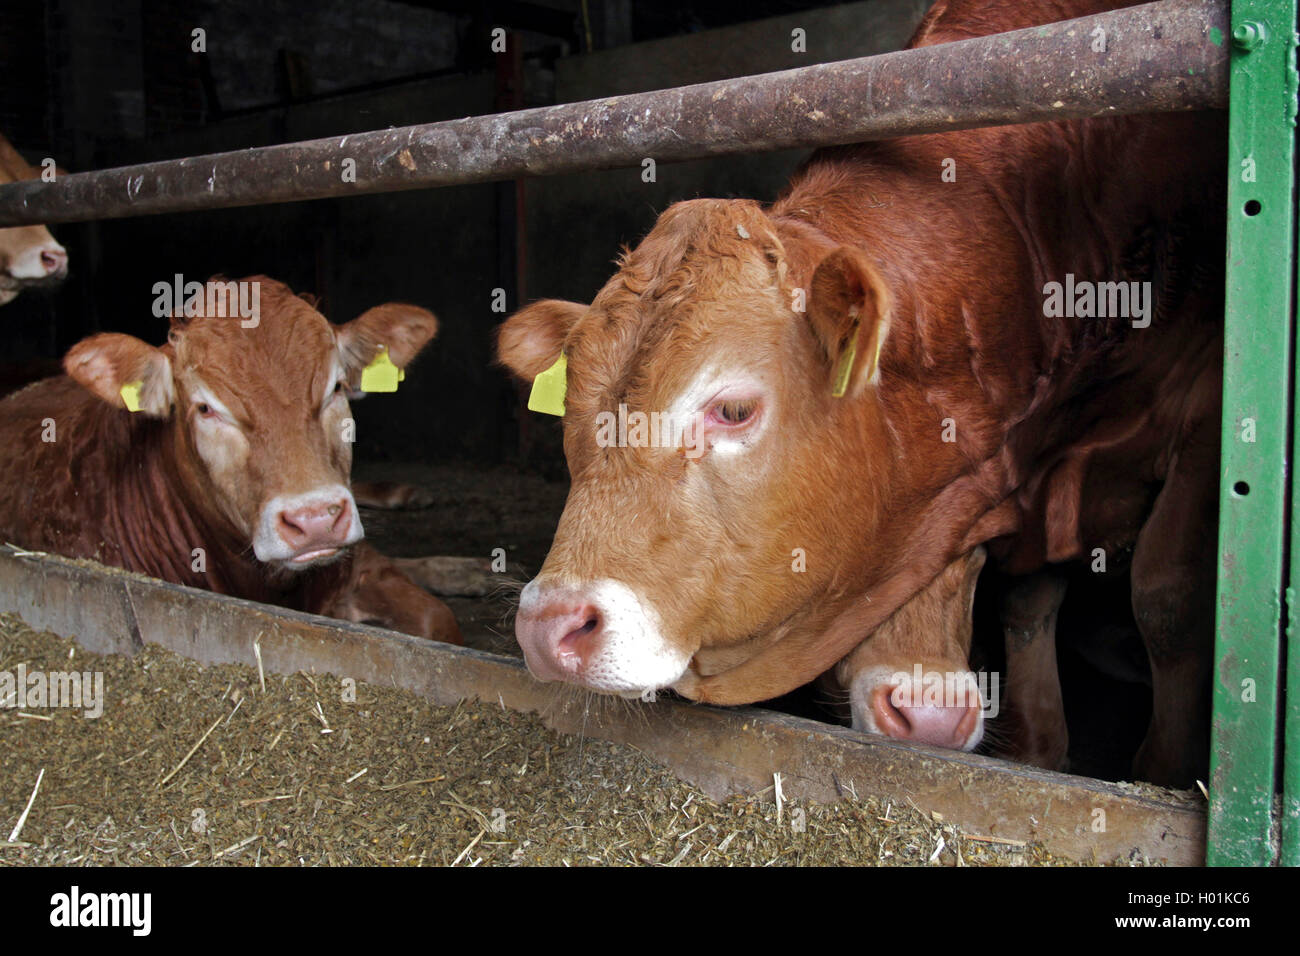 Limousin bovins, les bovins domestiques (Bos primigenius f. taurus), dans l'écurie cattles Limousin, Allemagne Banque D'Images